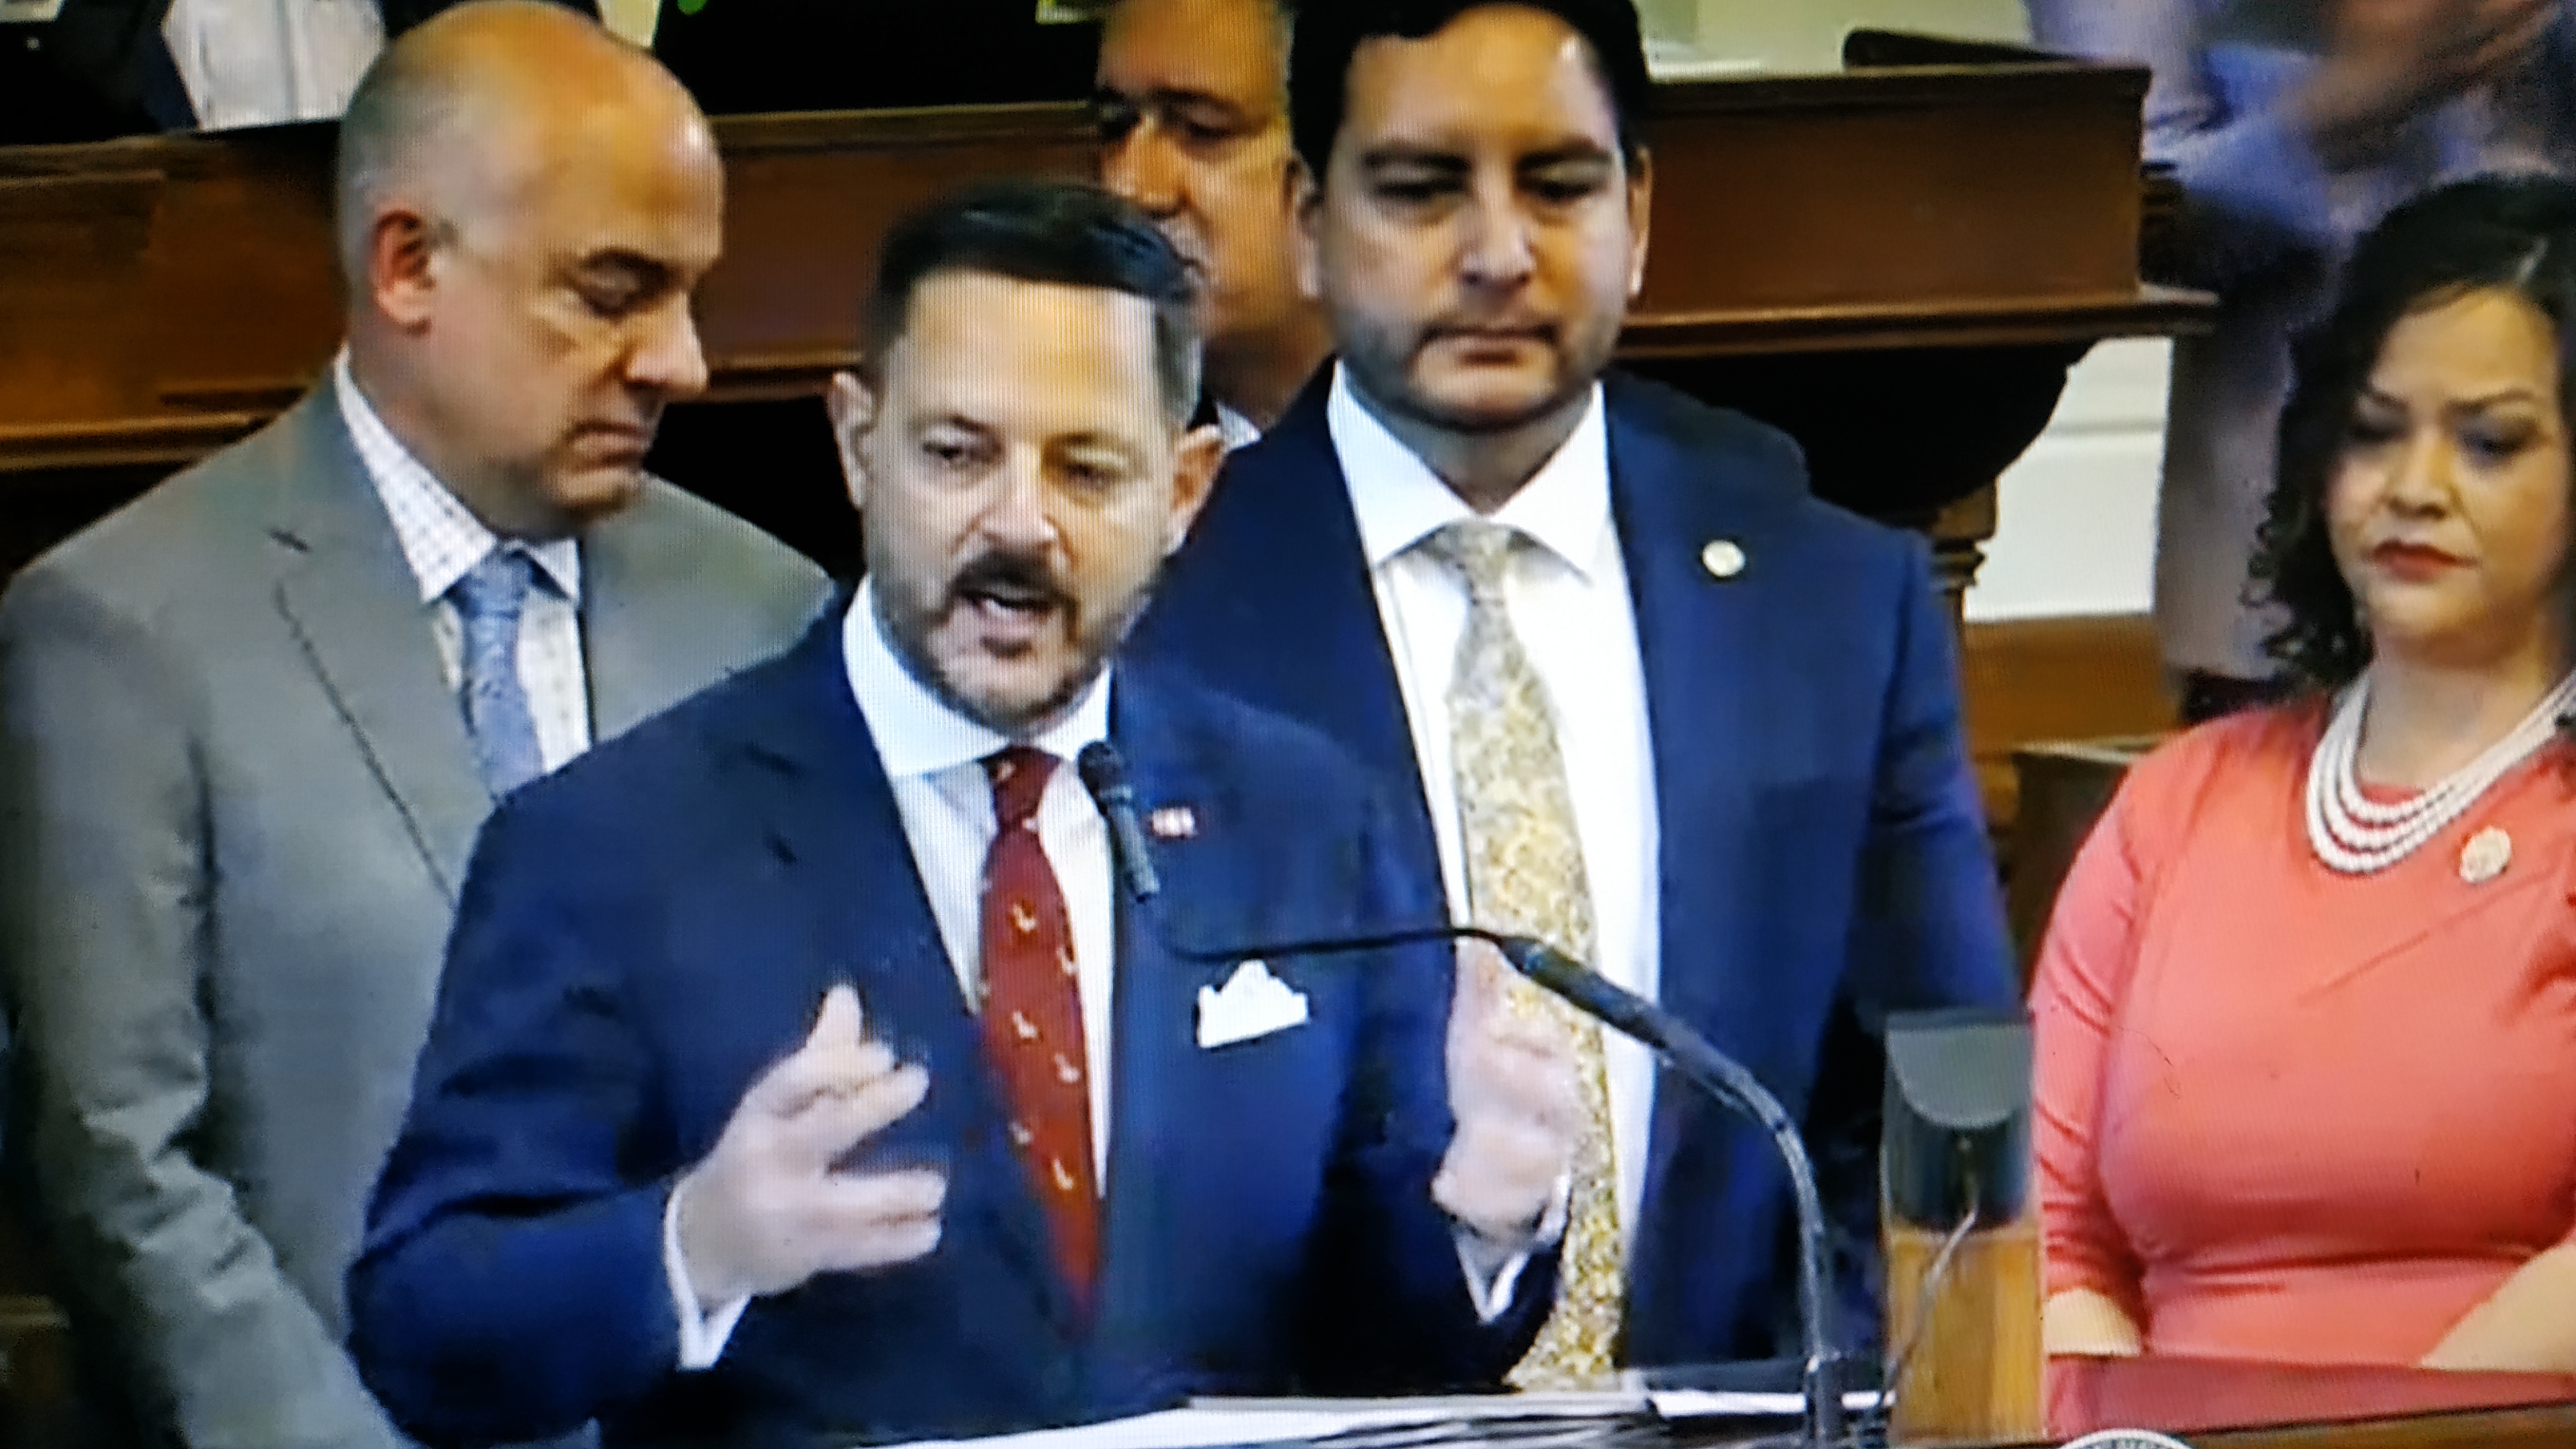 El congresista estatal Rafael Anchía se dirige a la Cámara flanqueado por representantes demócratas y republicanos, que apoyaron a una la Resolución (foto THR TV)